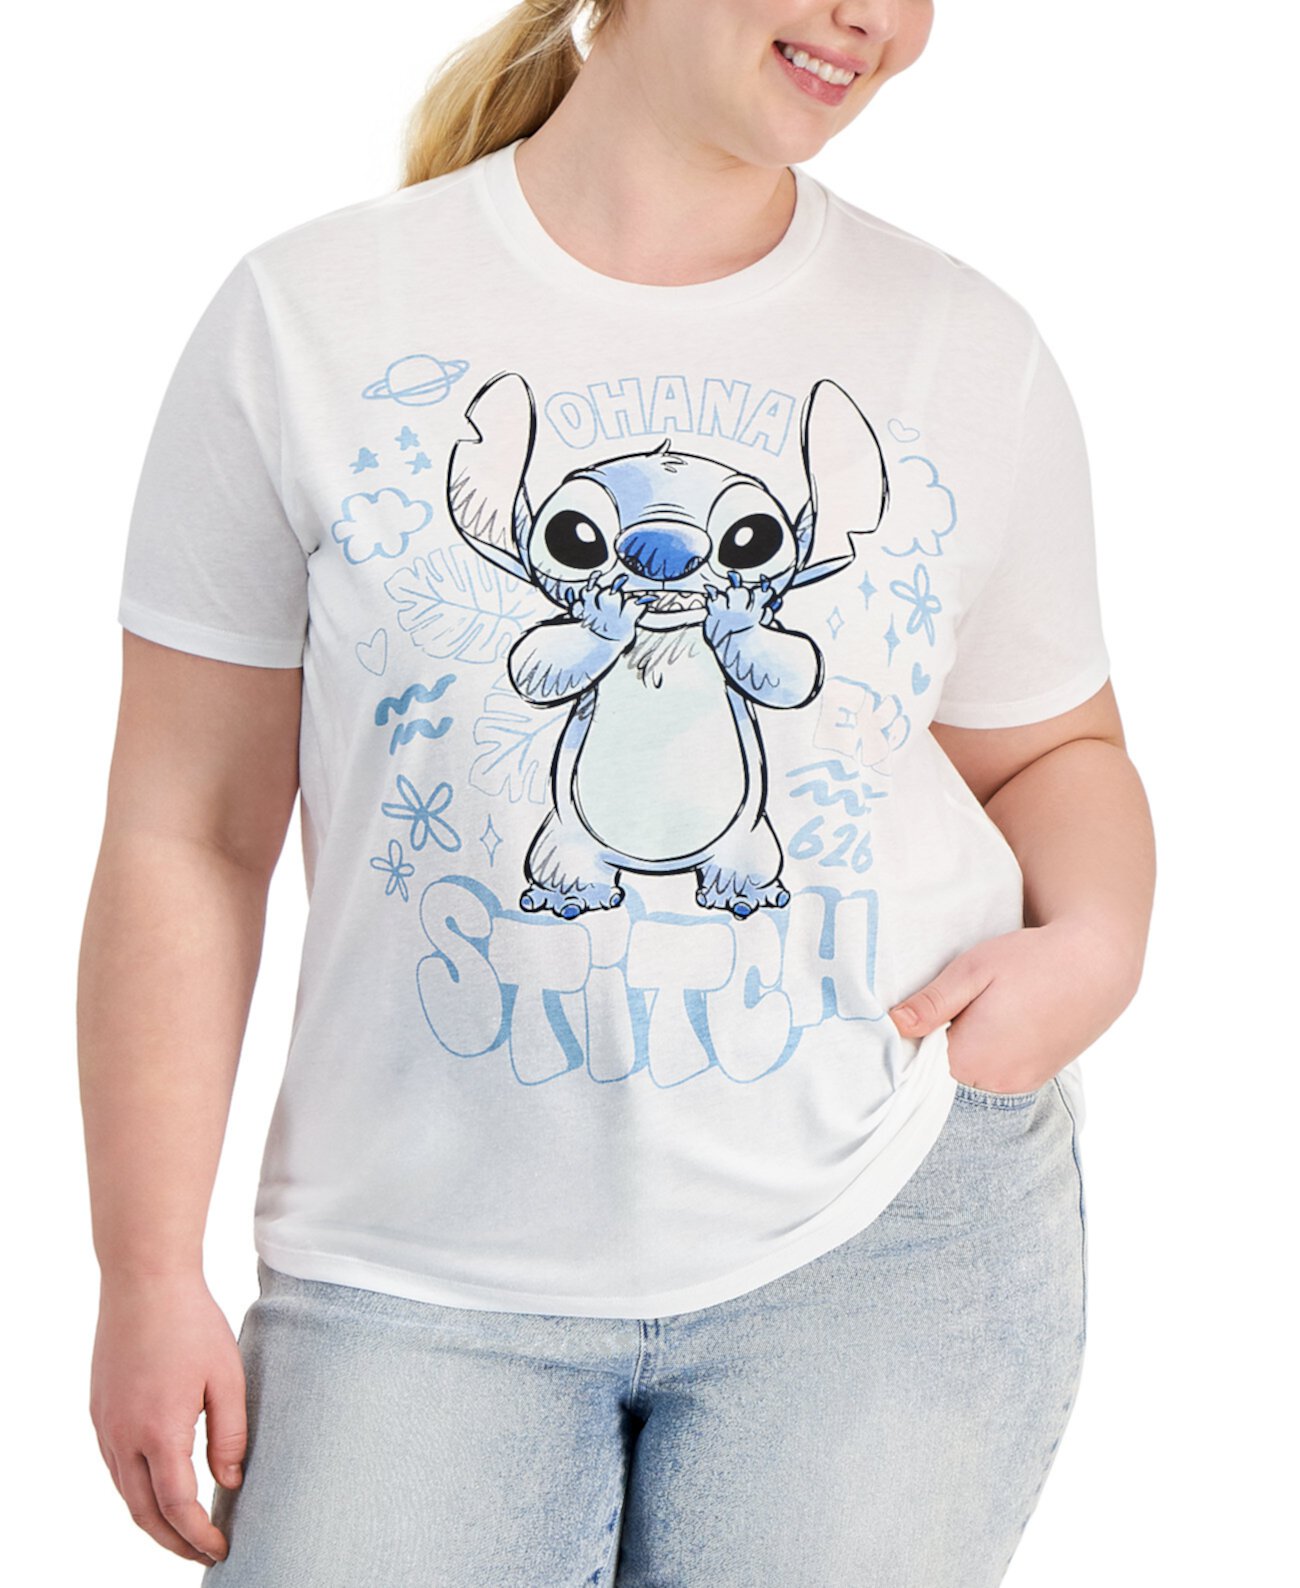 Женская футболка с короткими рукавами и круглым вырезом в стиле граффити Disney